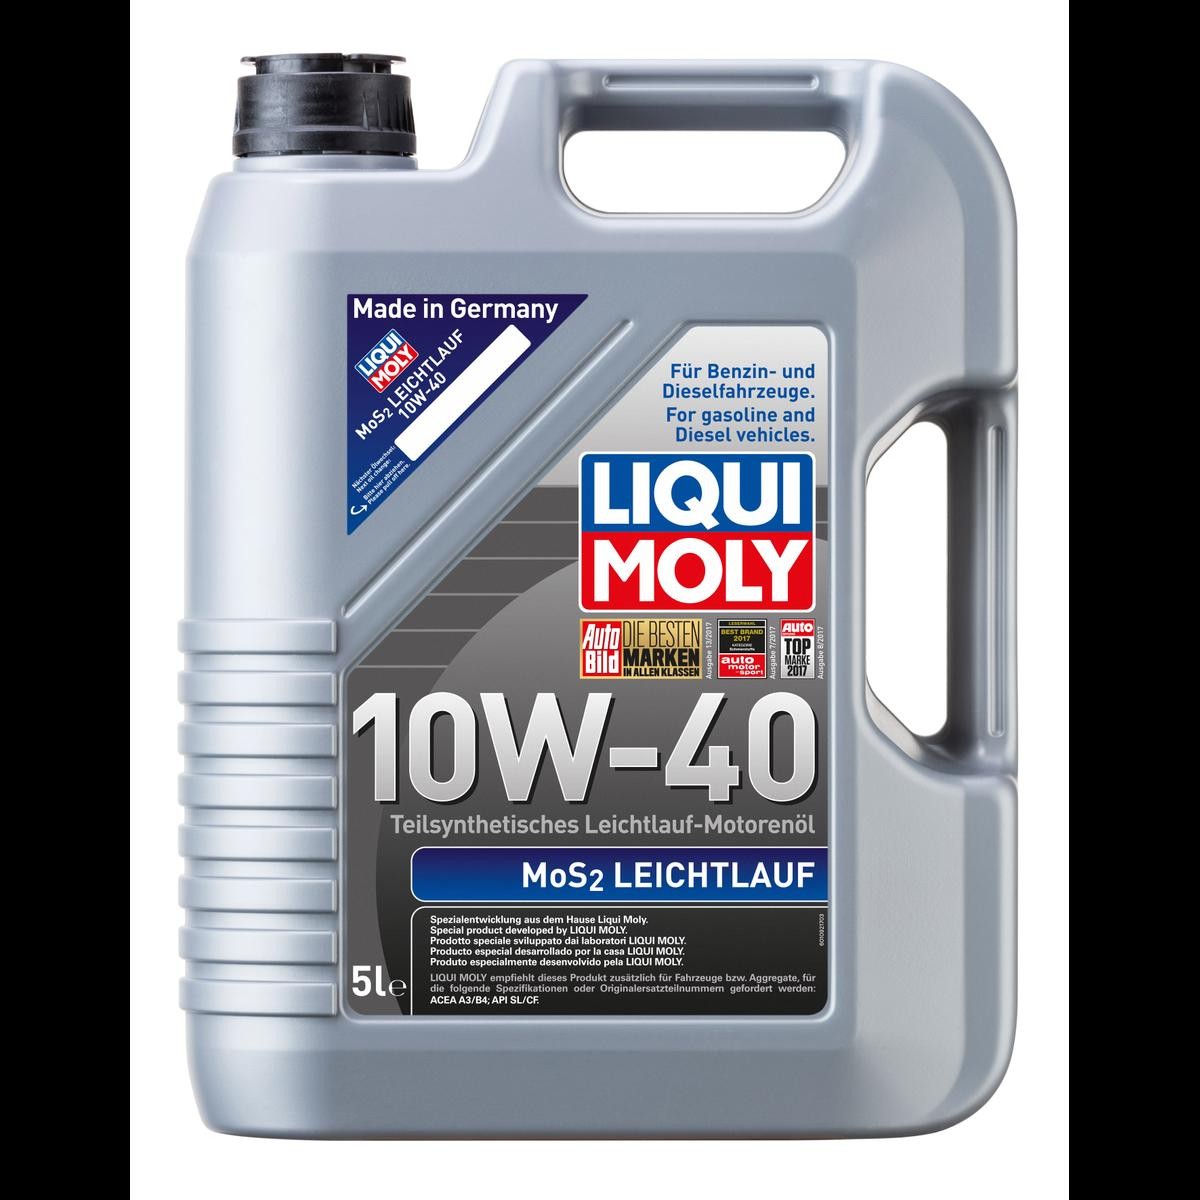 Motor Öl 1092 LIQUI MOLY МoS2, Leichtlauf 10W-40, 5l, Teilsynthetiköl